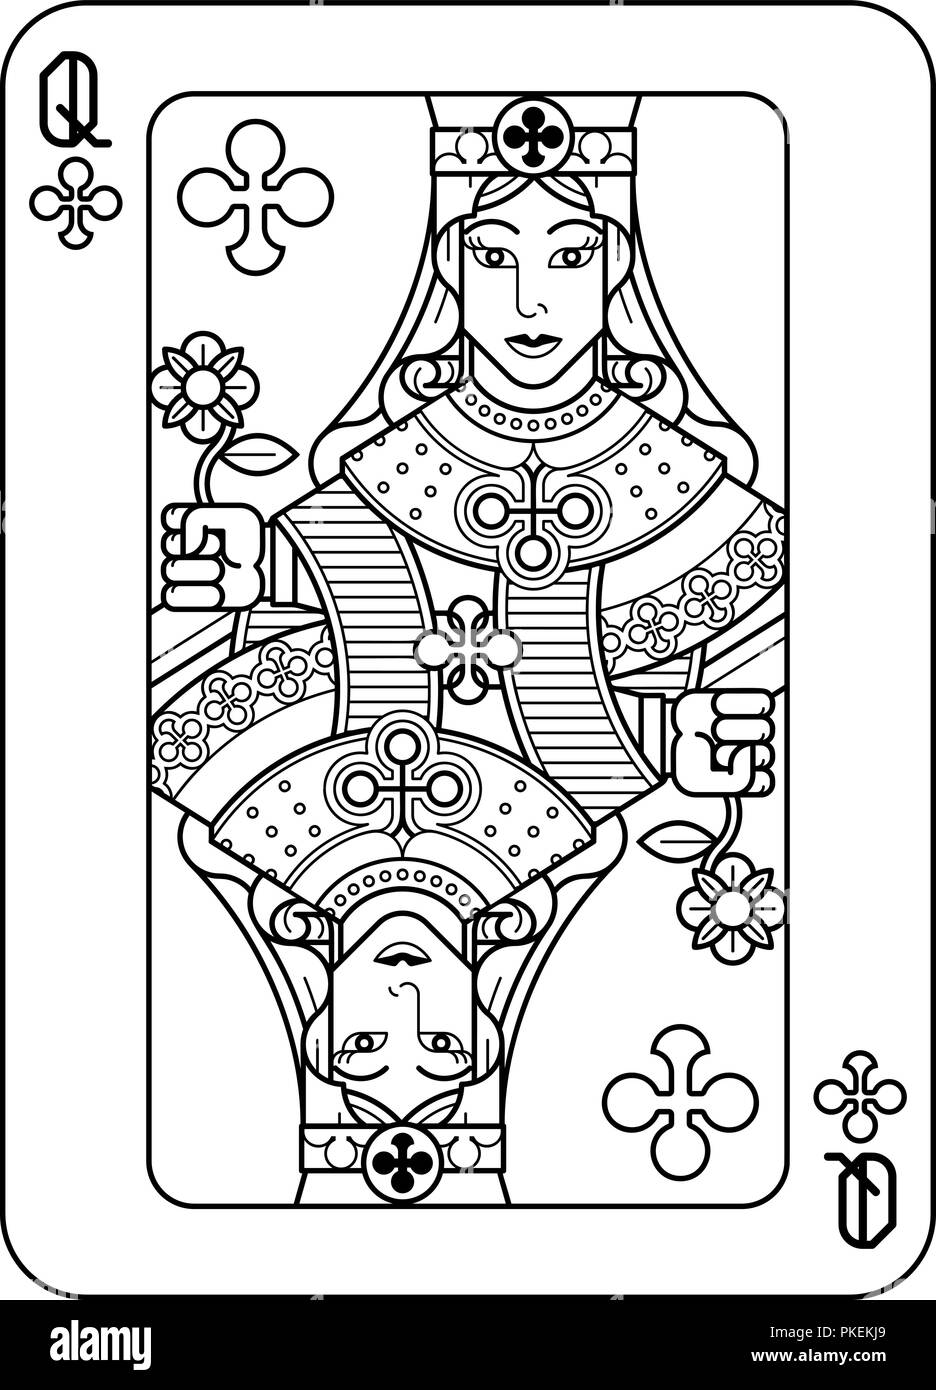 Jeu de cartes dans les clubs de Queen noir et blanc Illustration de Vecteur